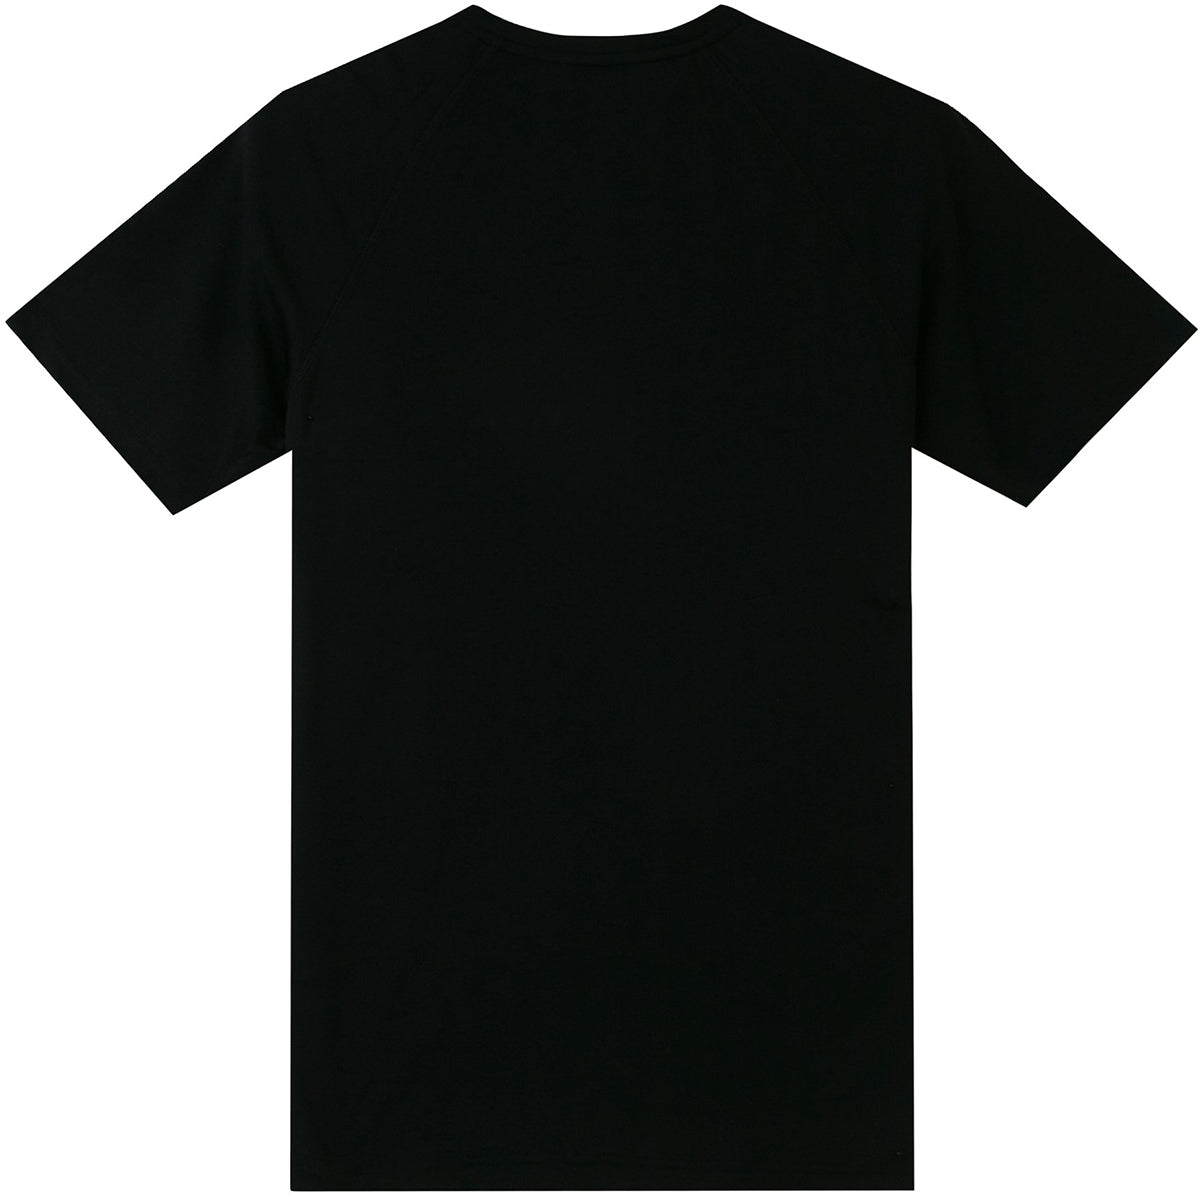 Tatami Fightwear Dry Fit T-Shirt - Black Tatami Fightwear